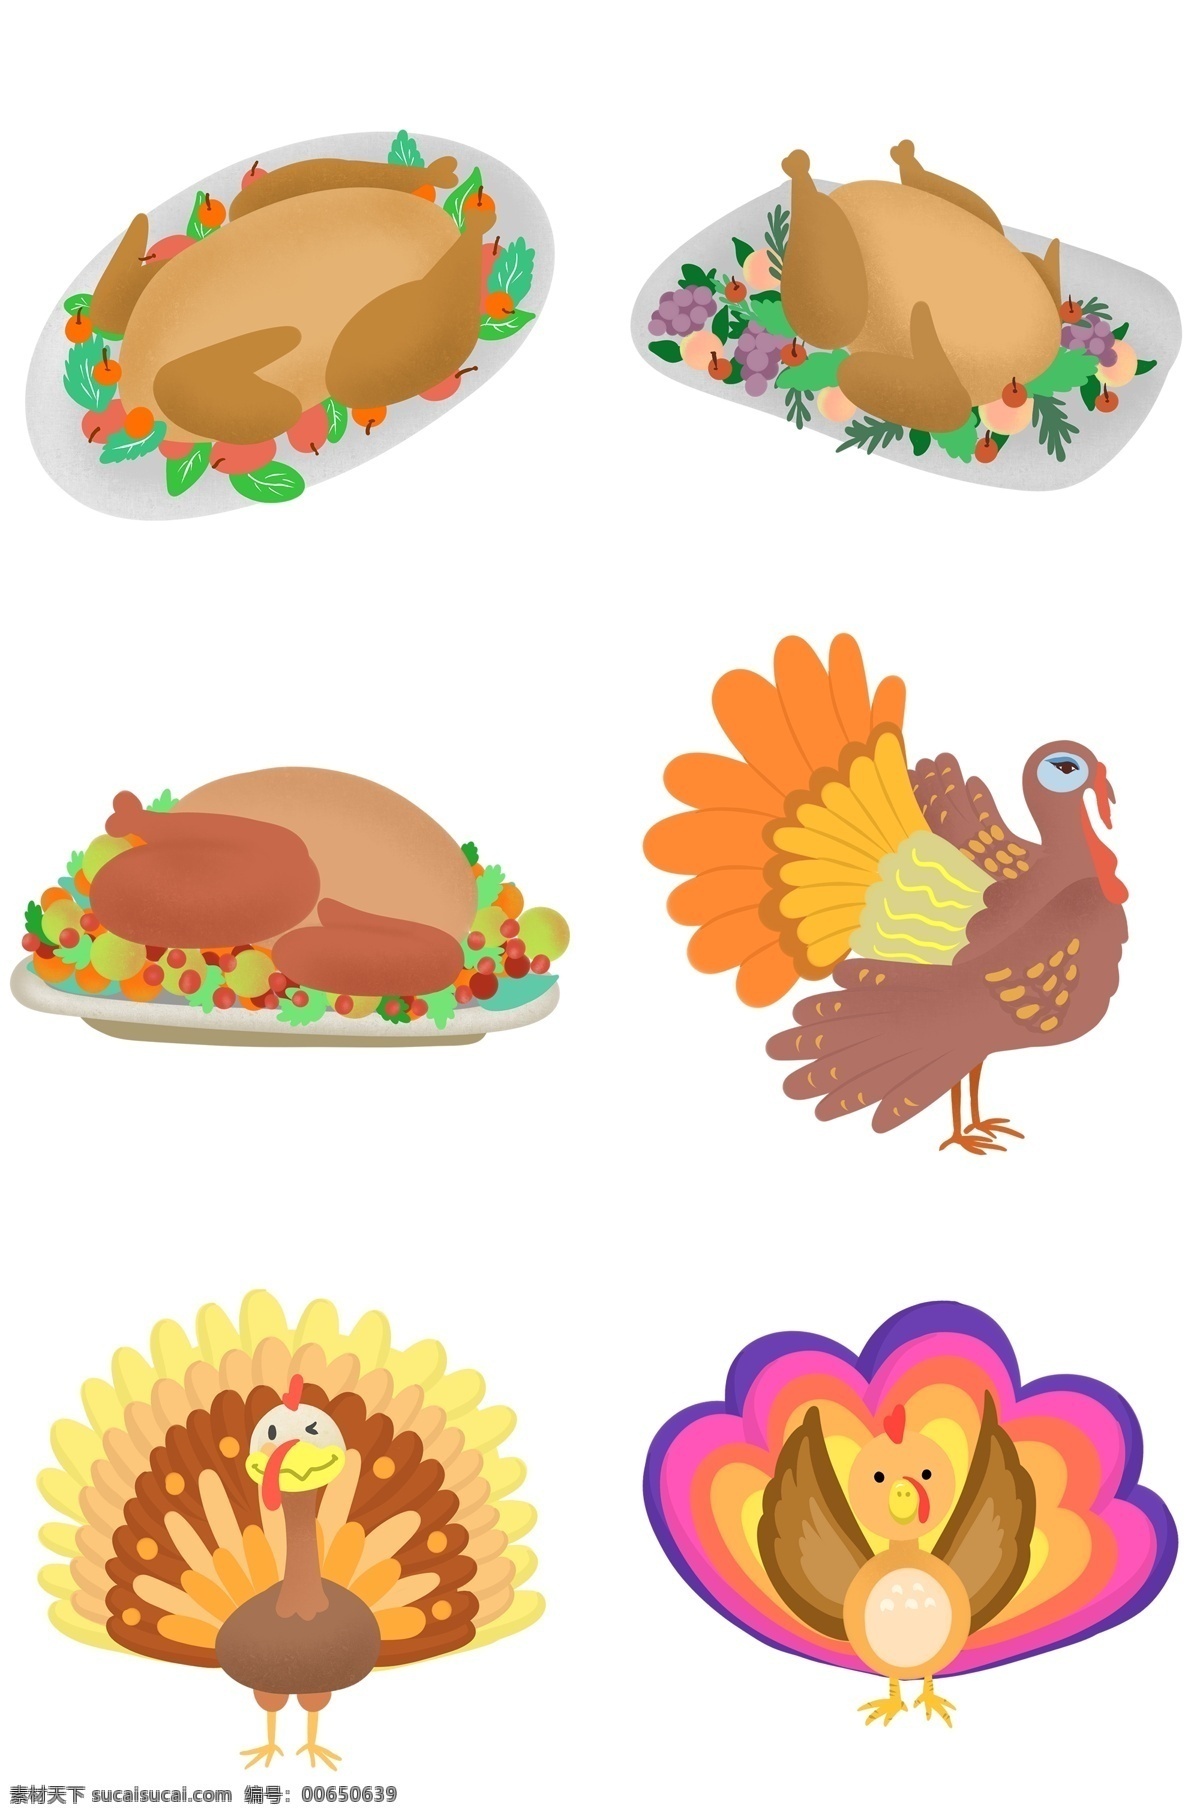 感恩节 火鸡 系列 图案 食物 动物 活的火鸡 烧烤火鸡 手绘 卡通 水果 盘子 站立 翅膀 尾巴 可爱